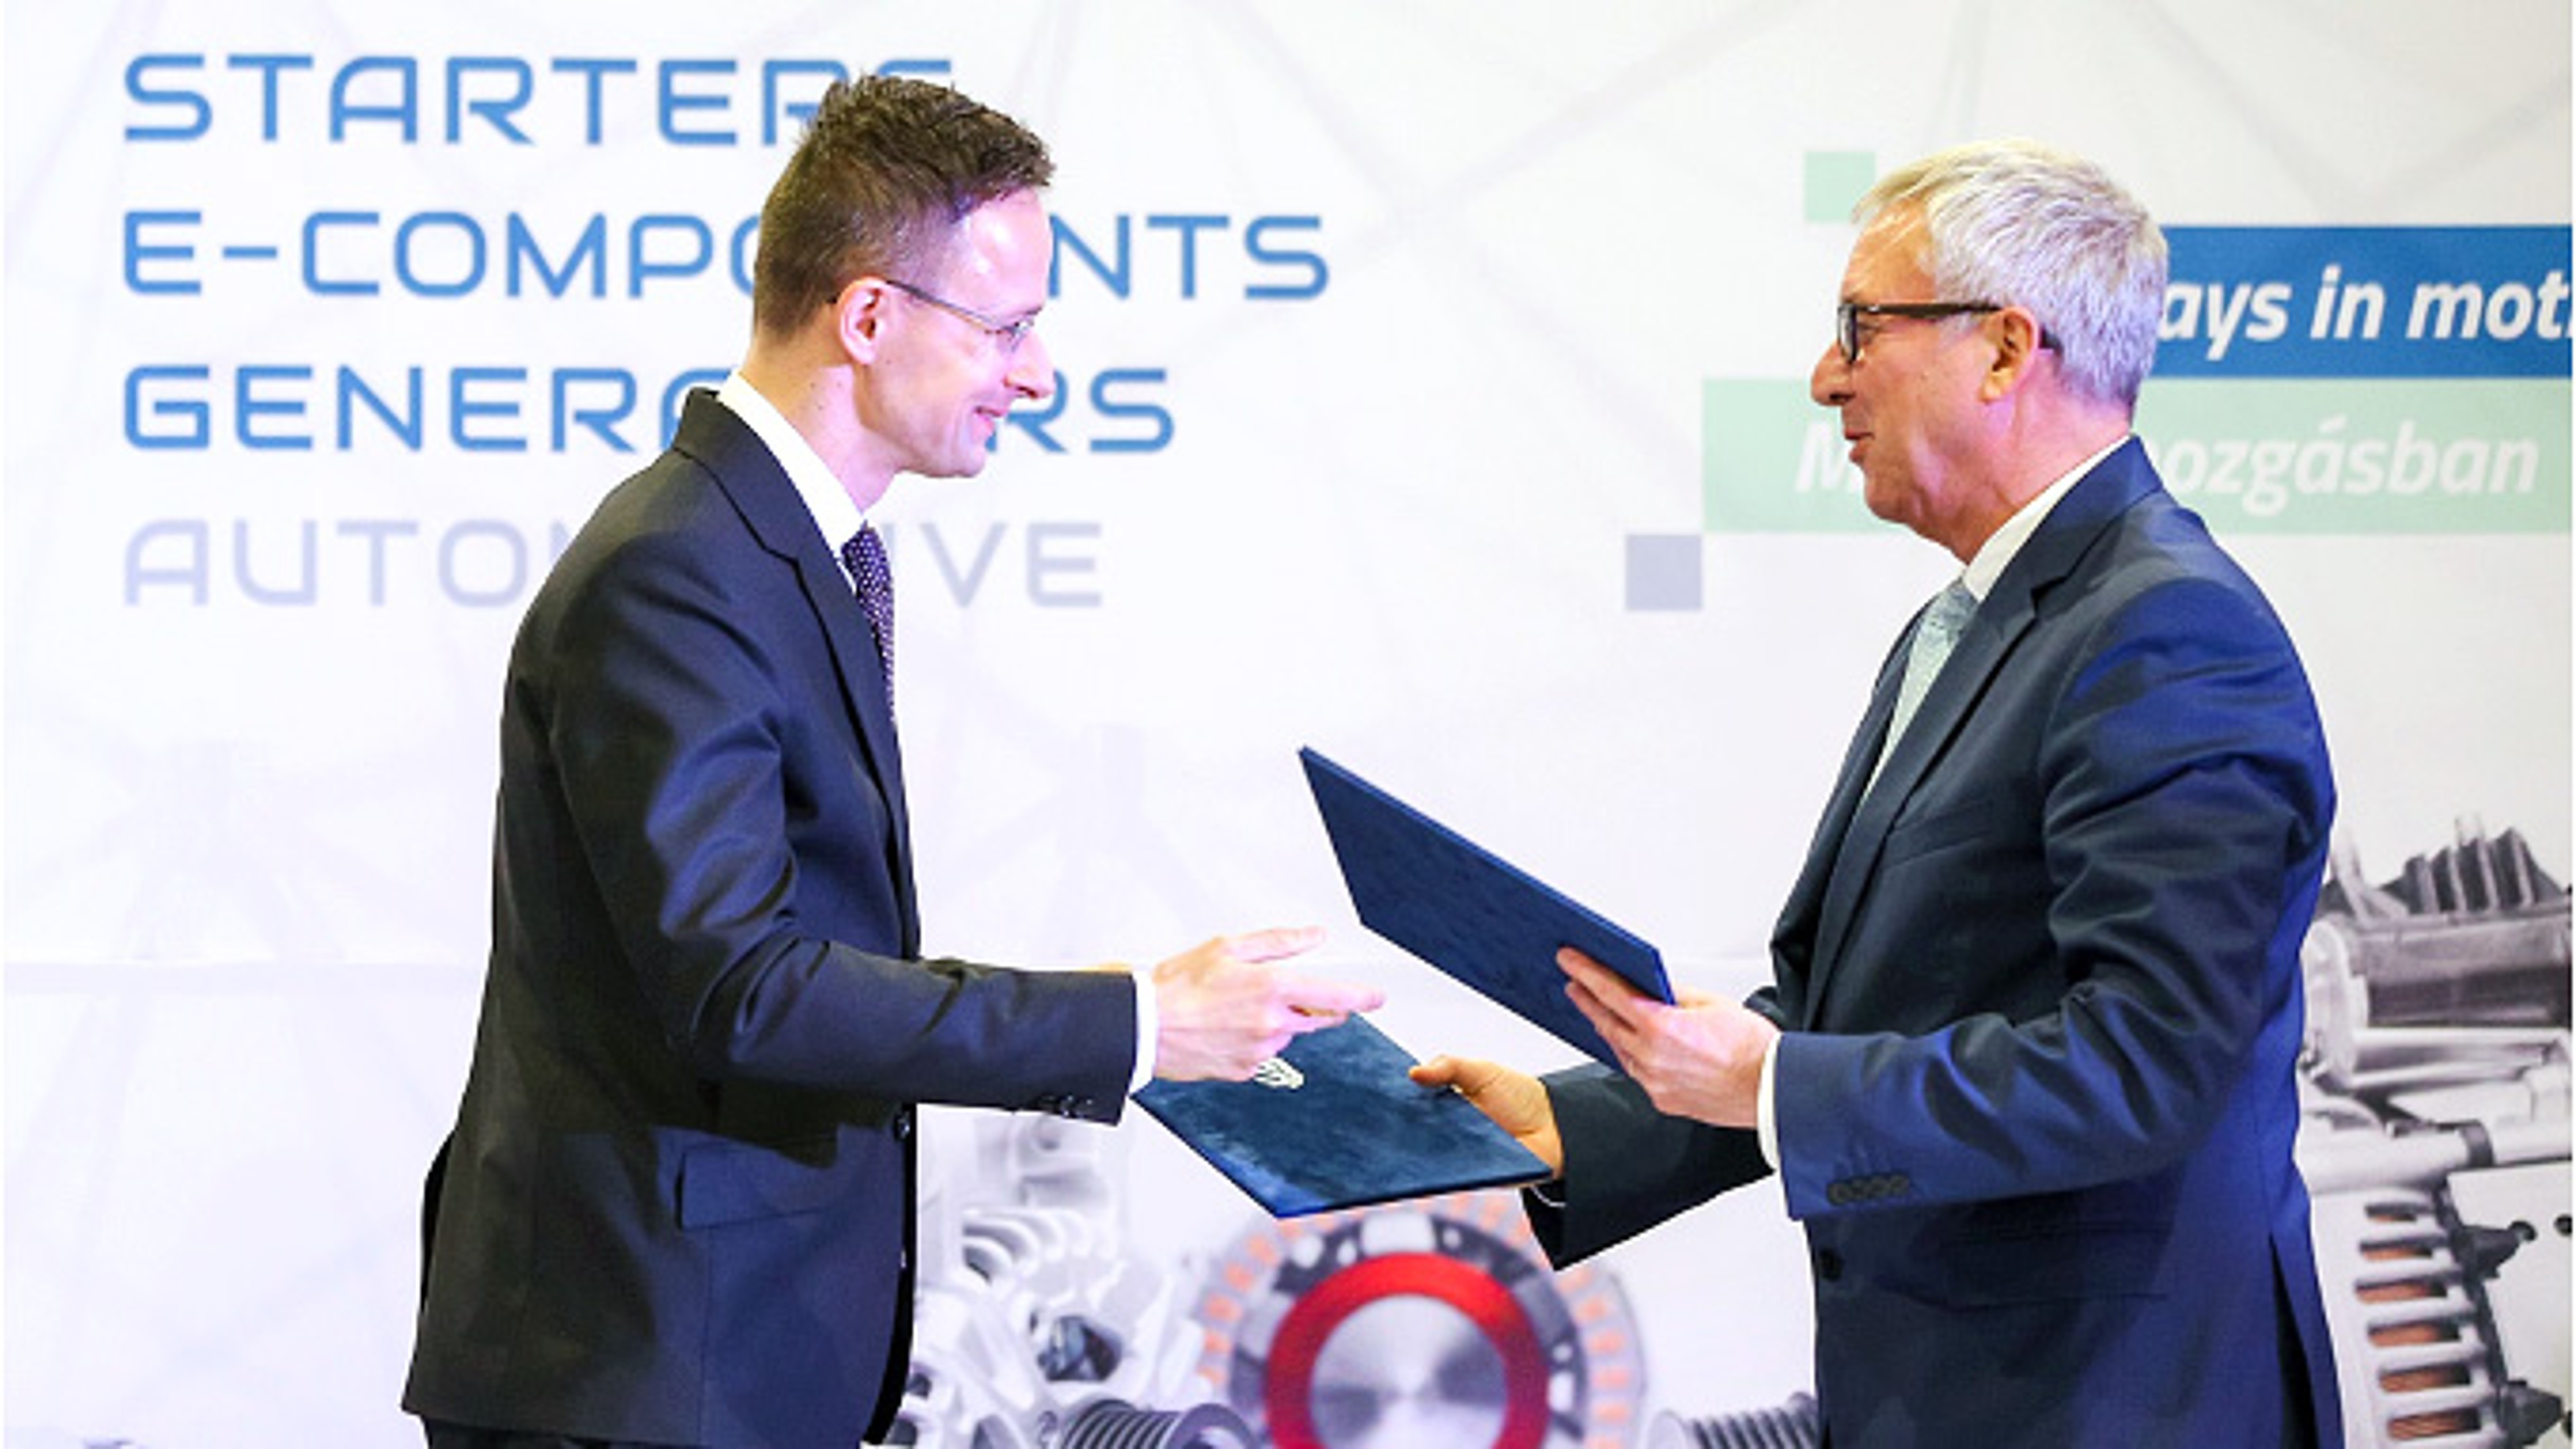 匈牙利部长Péter Szijjártó先生与索恩格汽车的Uwe Mang先生签署合作协议